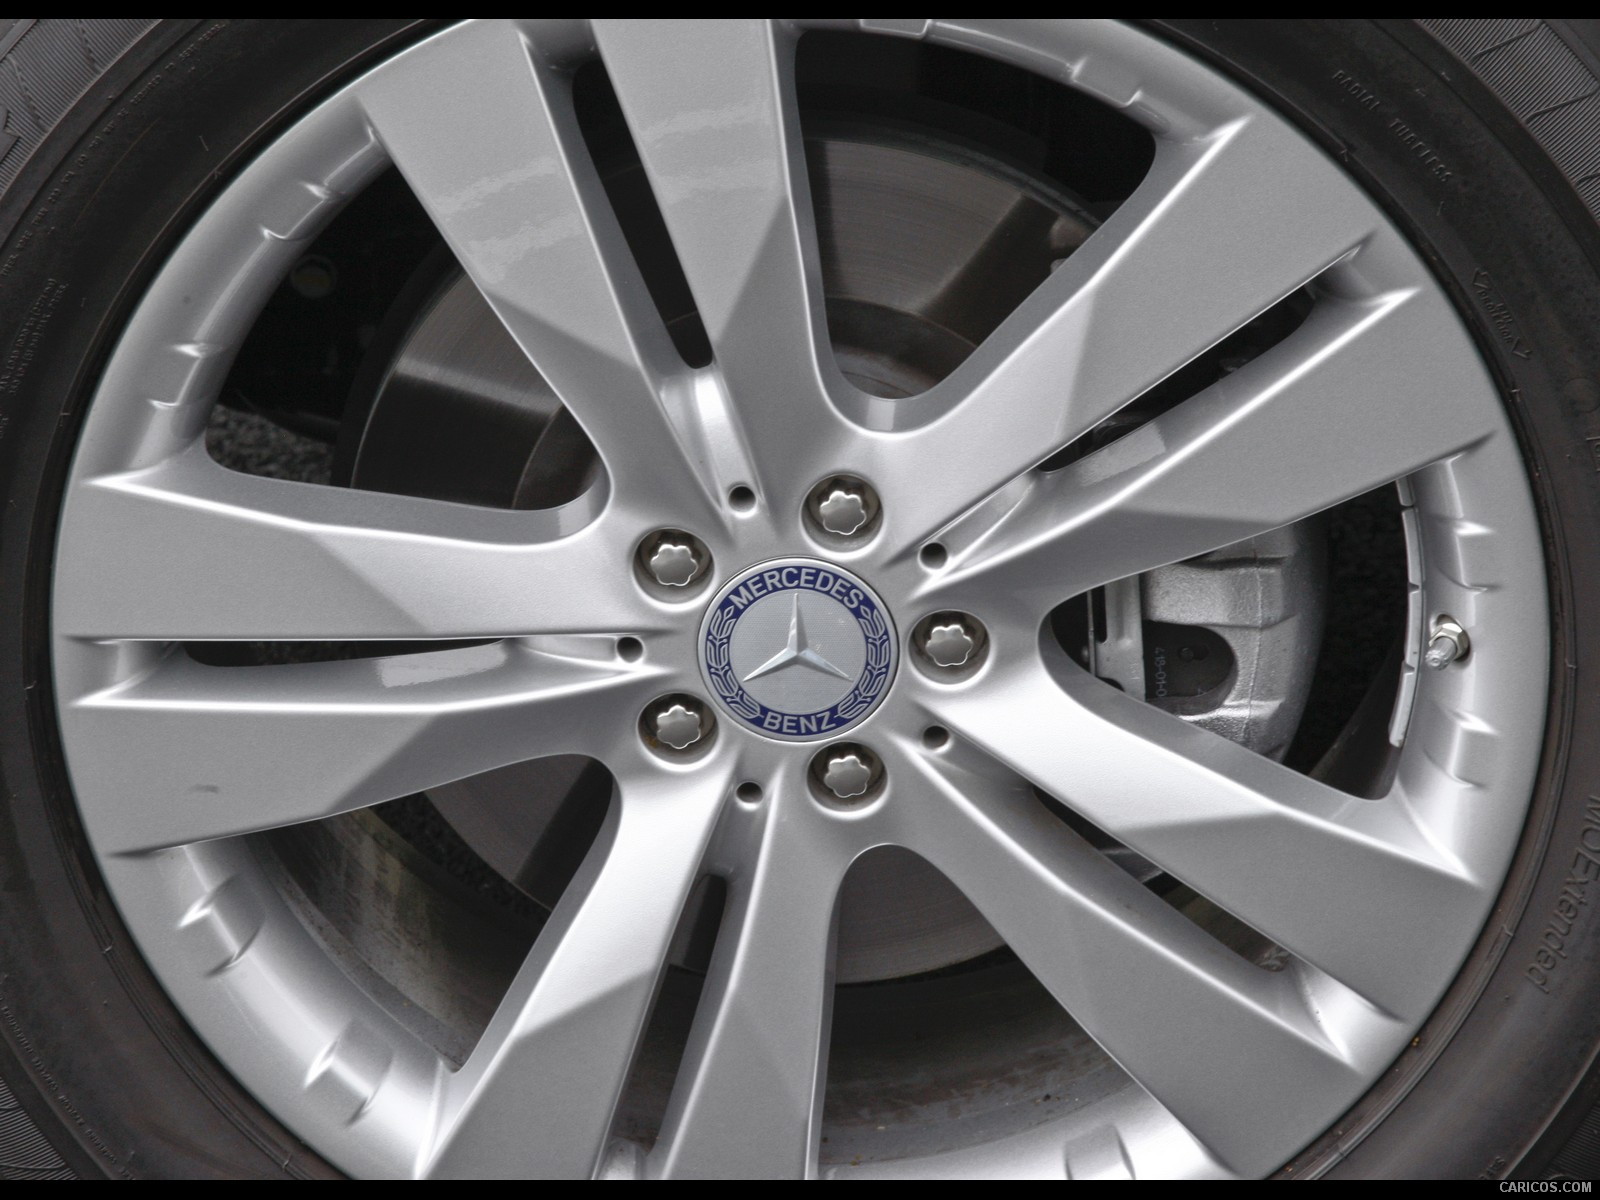 2010 Mercedes-Benz GL350 BlueTEC - Wheel, #35 of 112